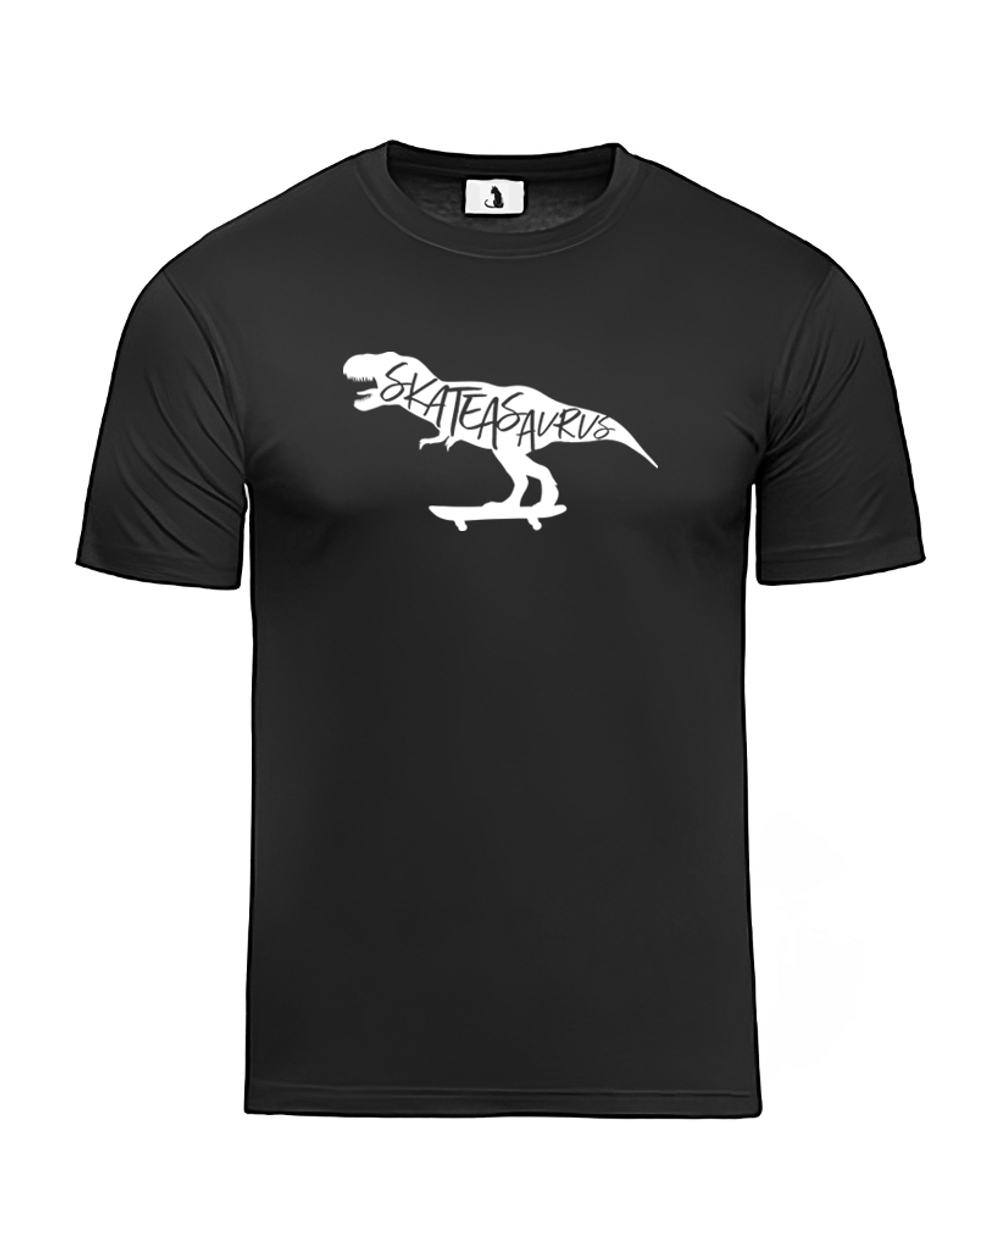 Футболка Skateasaurus unisex черная с белым рисунком